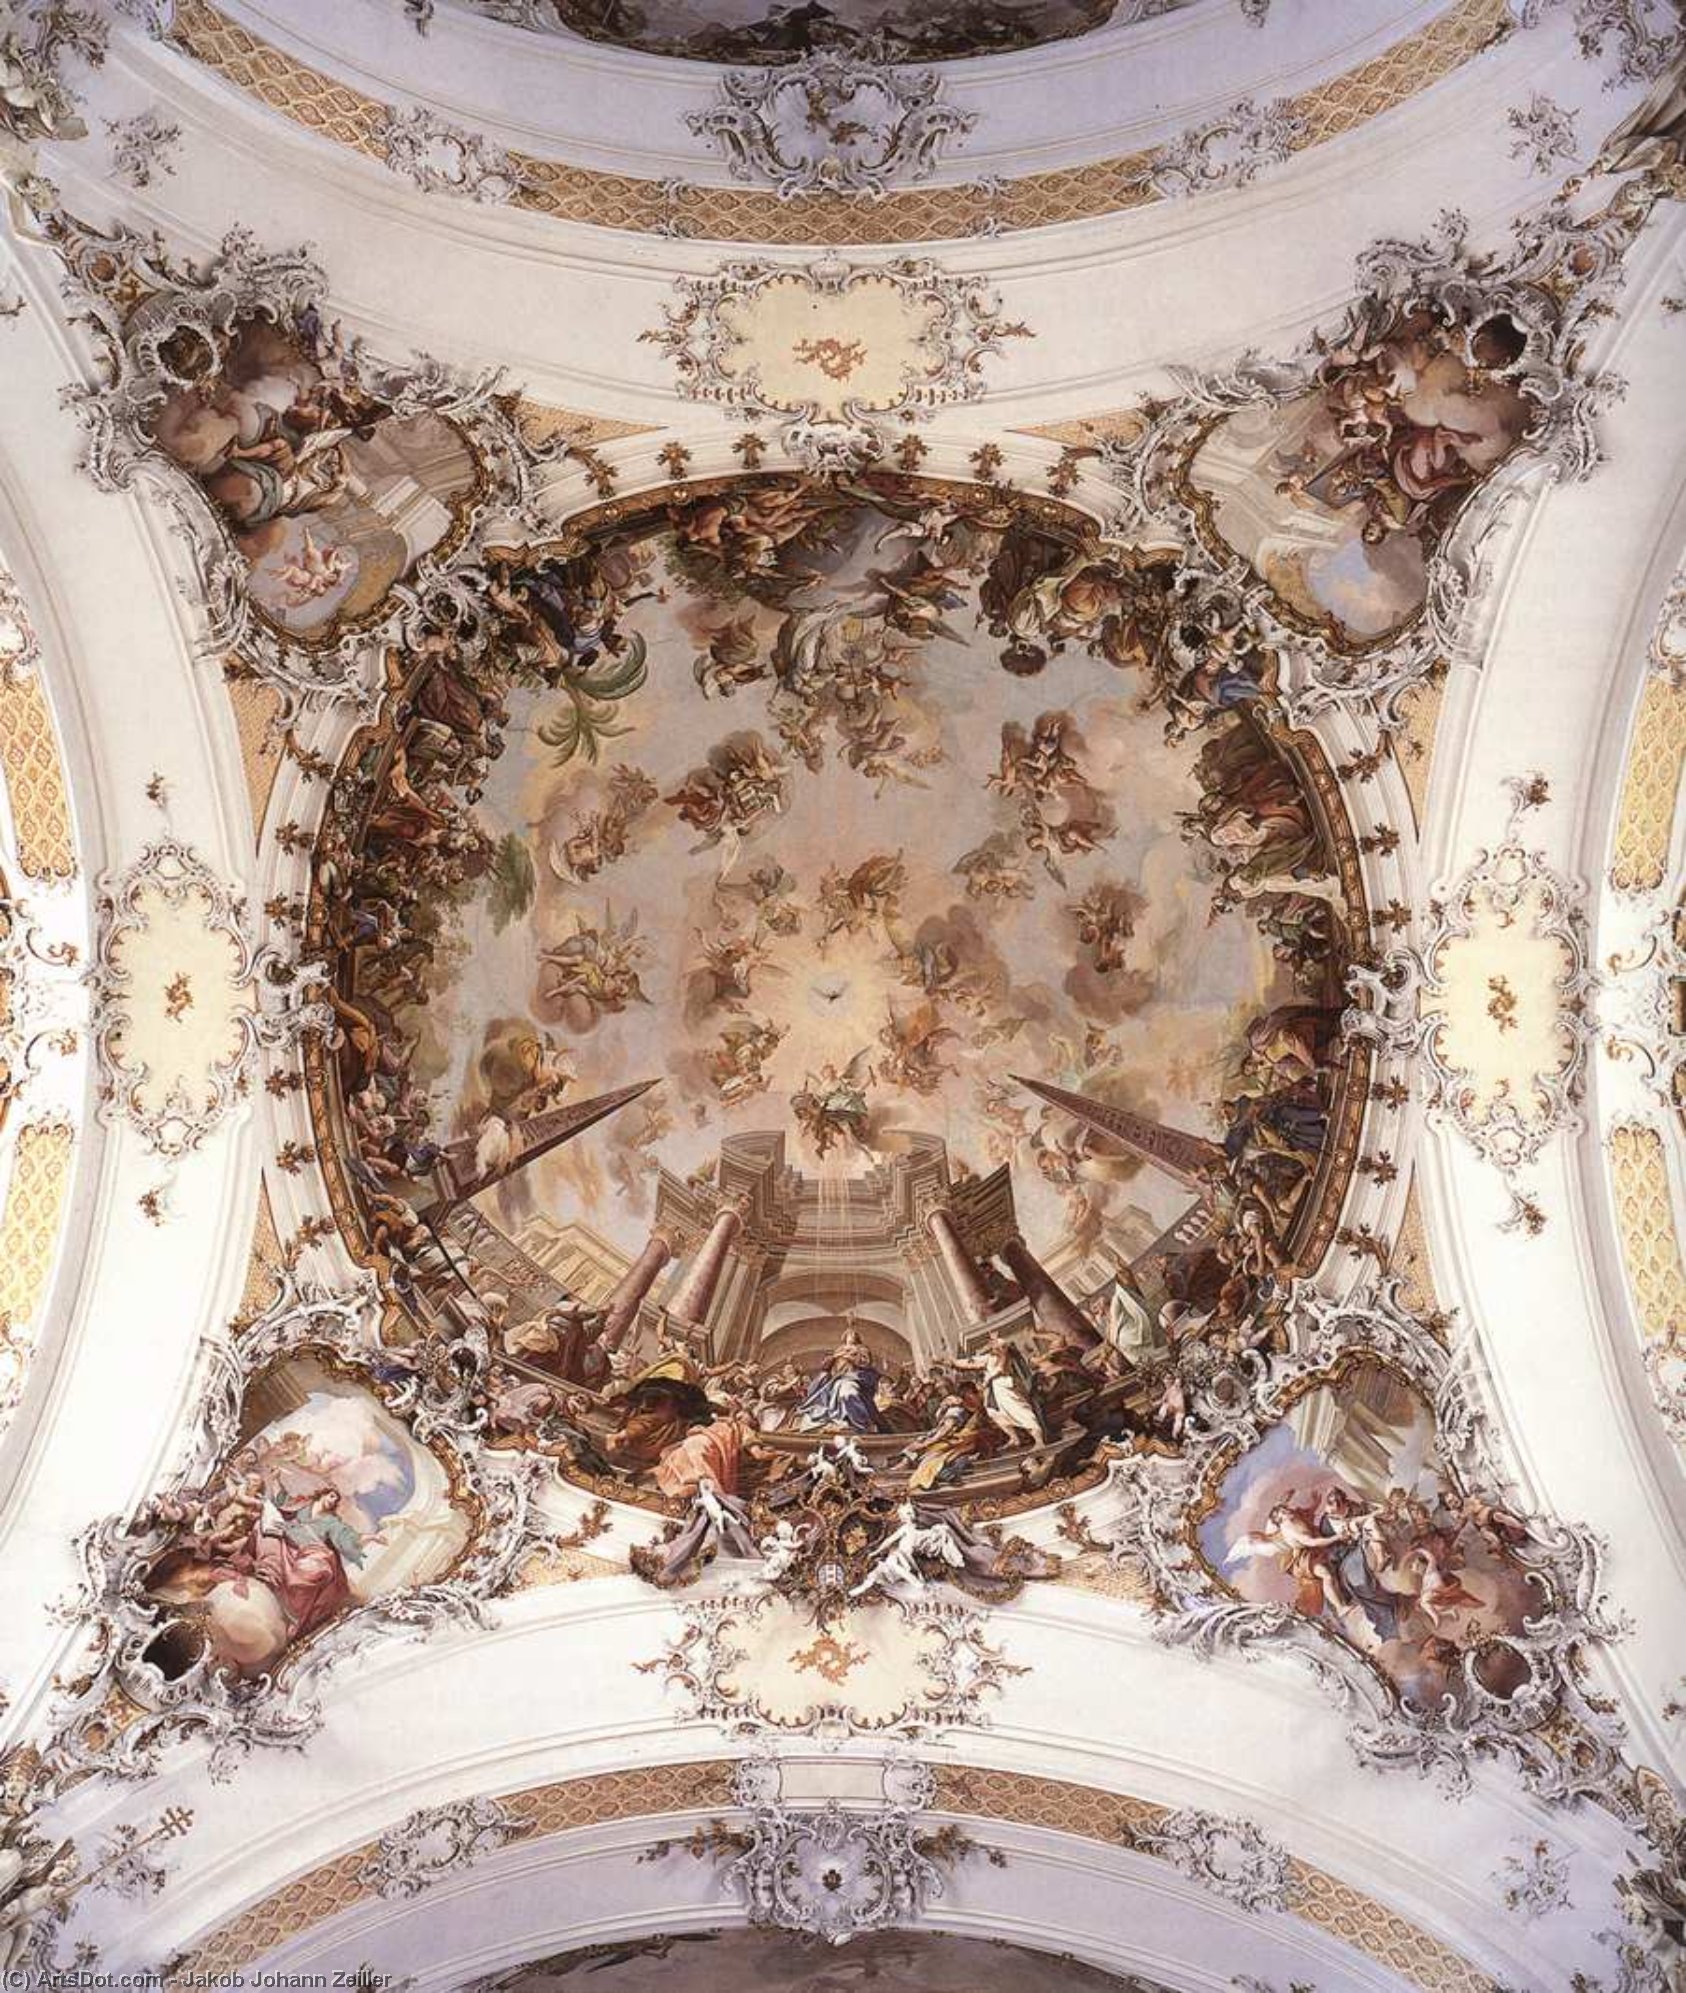 WikiOO.org - Εγκυκλοπαίδεια Καλών Τεχνών - Ζωγραφική, έργα τέχνης Jakob Johann Zeiller - Ceiling fresco